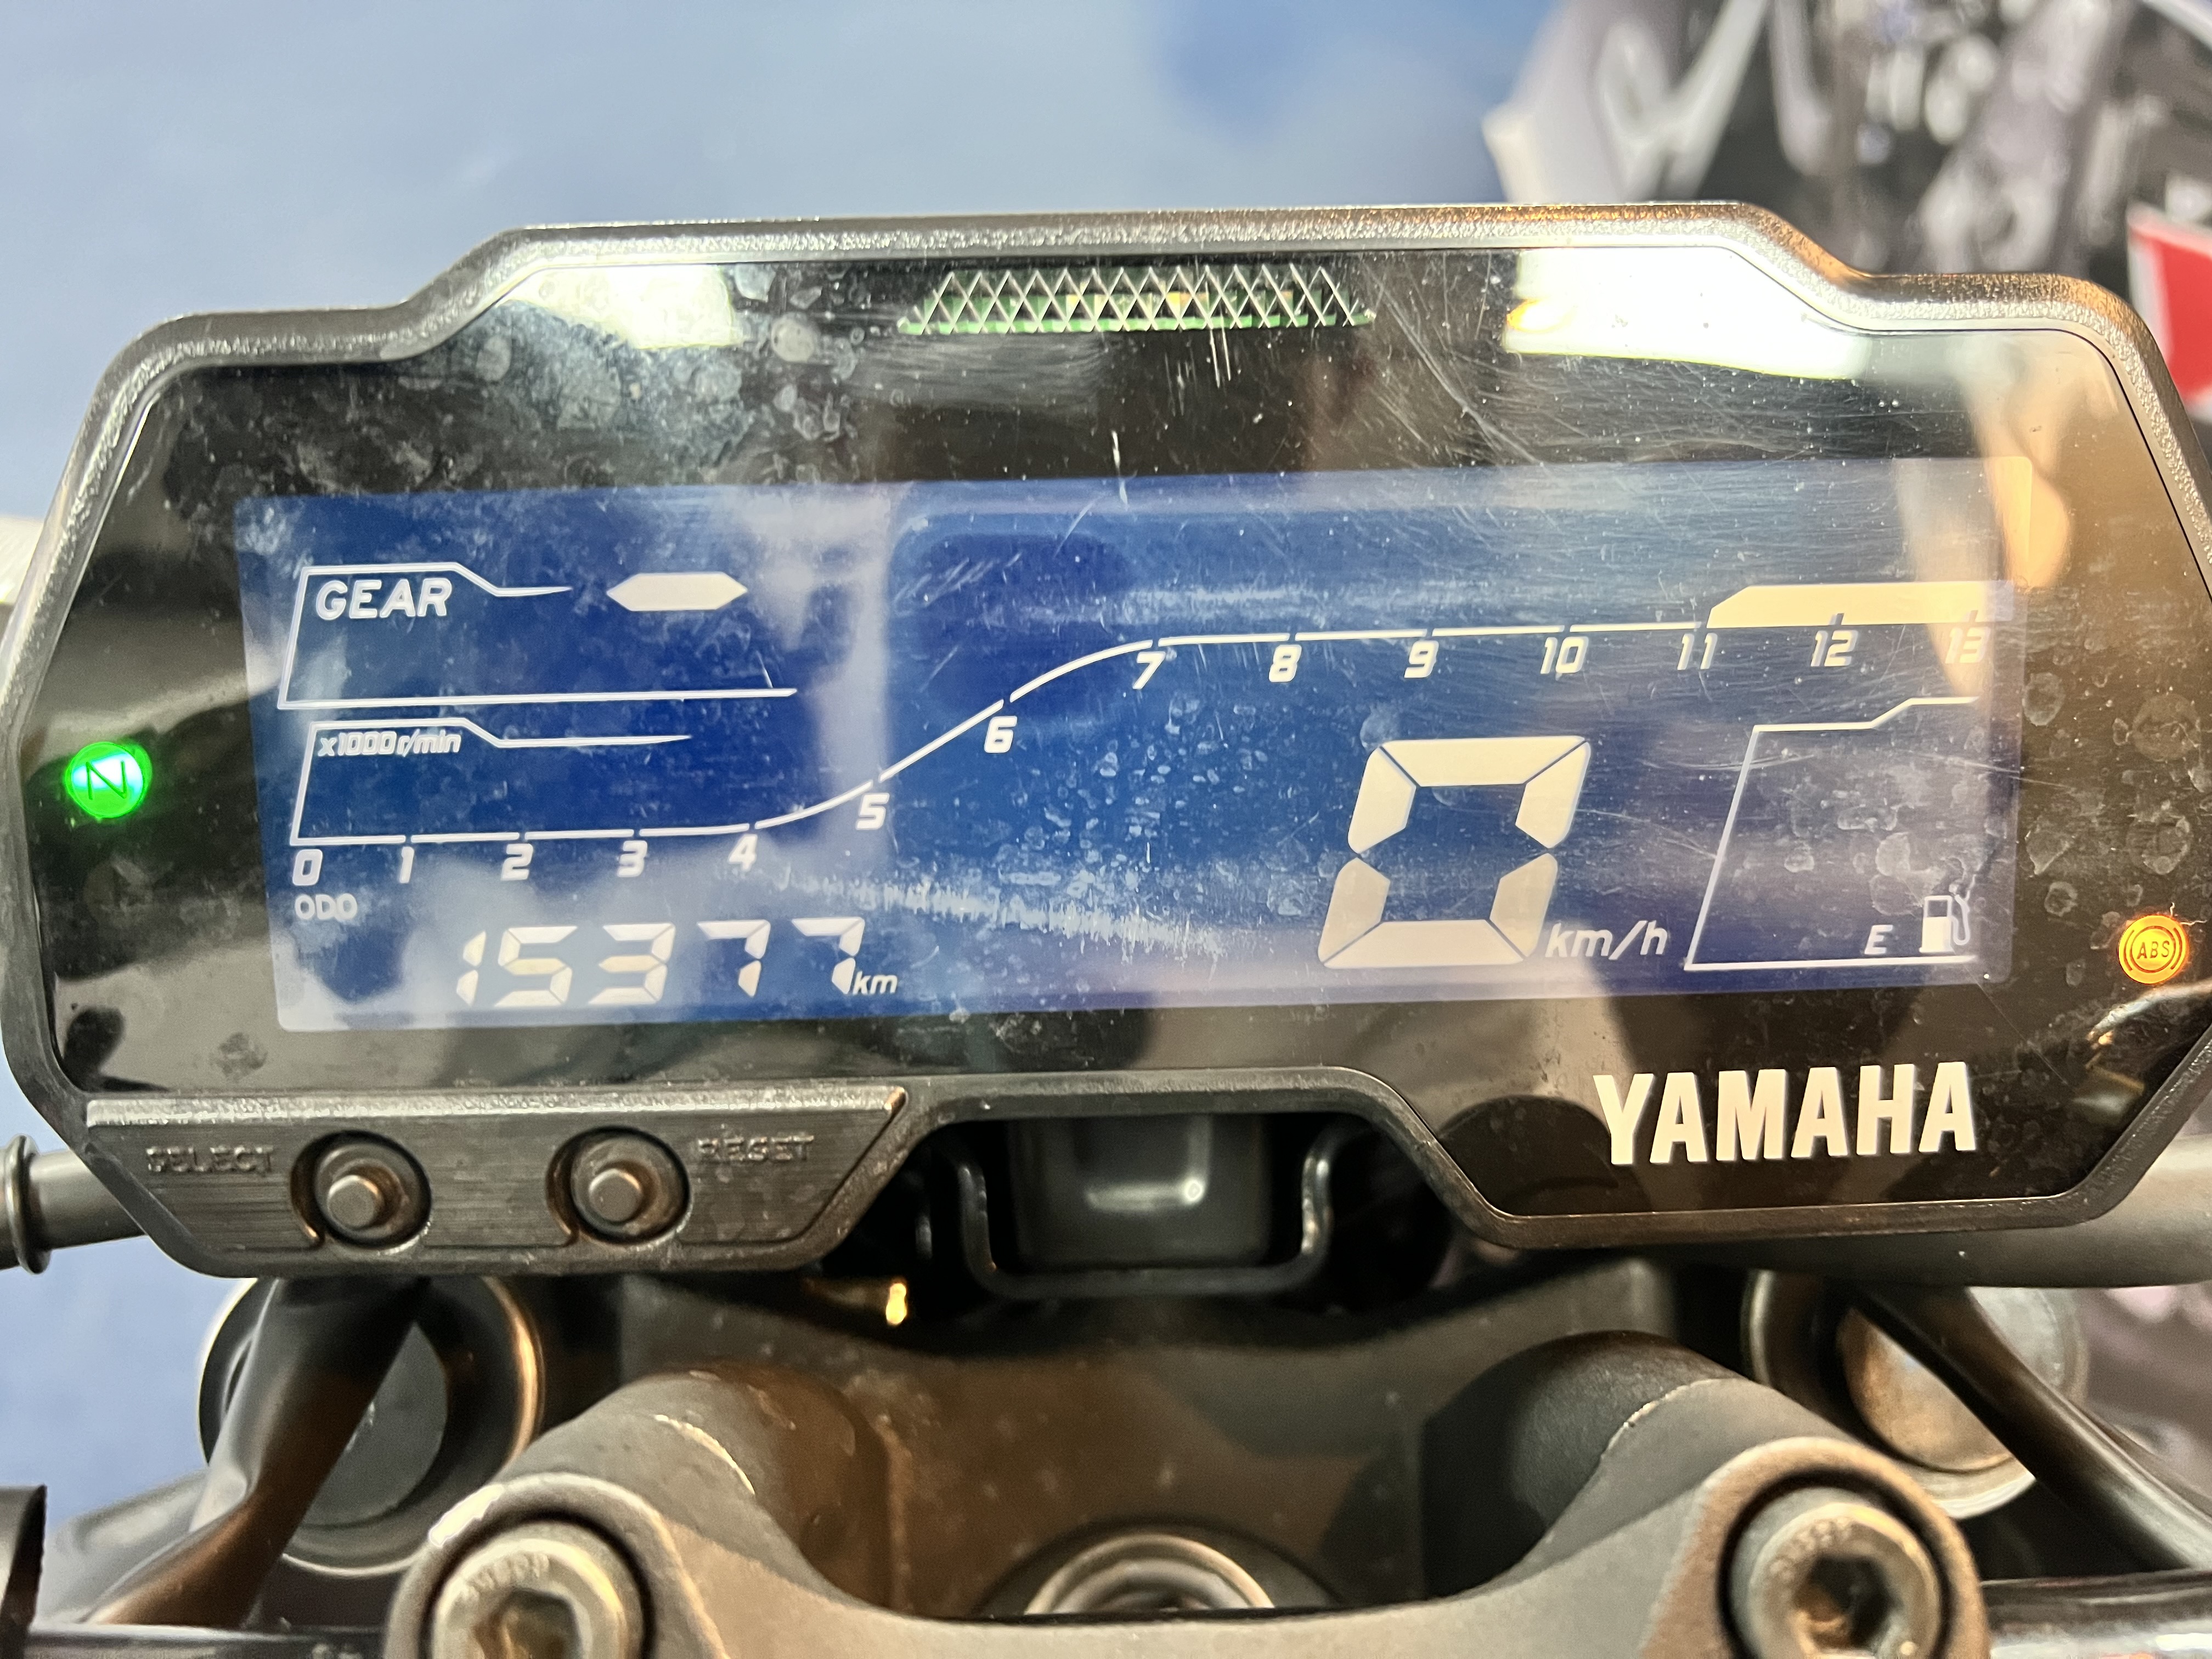 YAMAHA MT-15 - 中古/二手車出售中 2020 Yamaha MT-15 | 哈斯重機